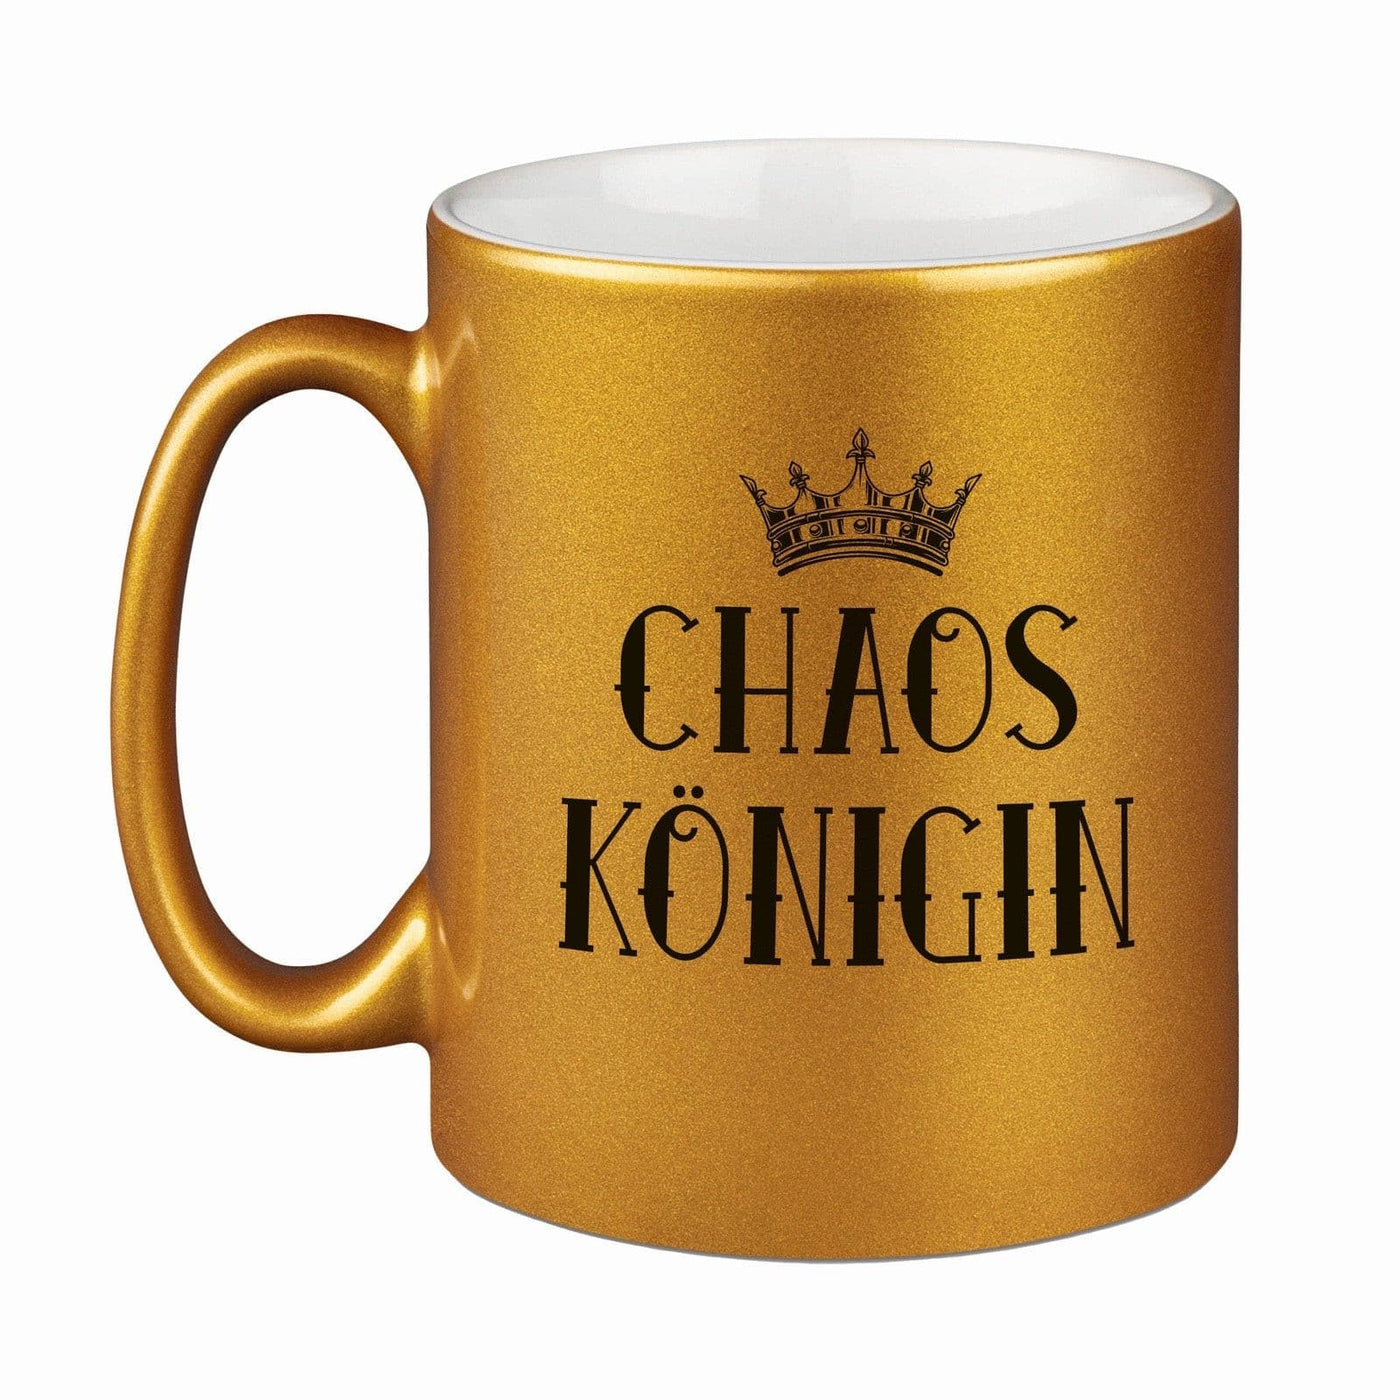 Bild: Tasse - Chaos Königin - Metallictasse Geschenkidee